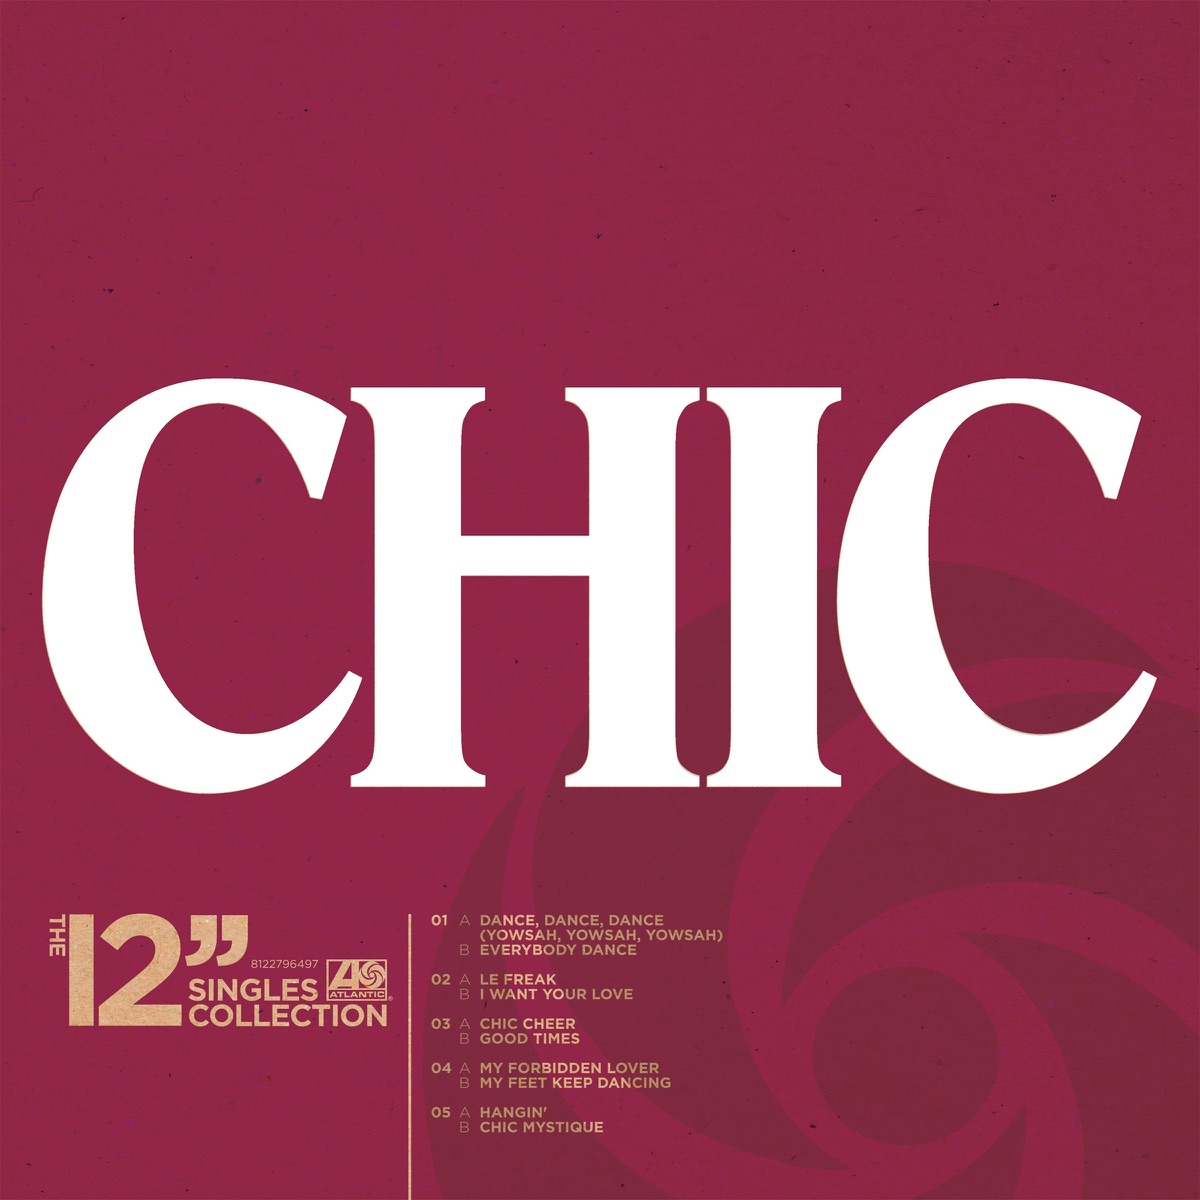 C'EST CHIC INCLUDES LE FREAK ATLANTIC RECORDS VINYL LP